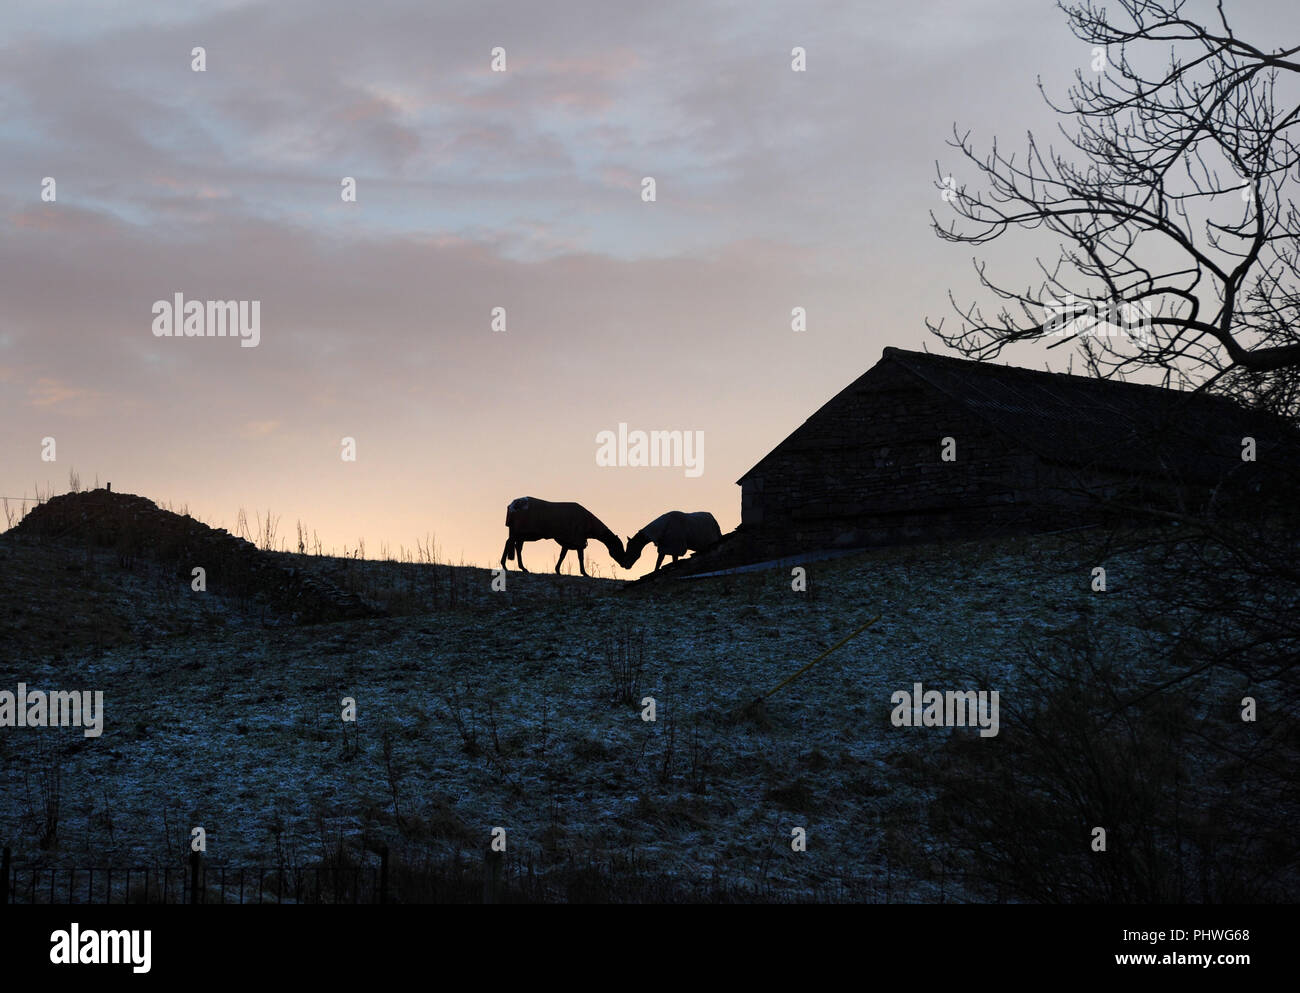 Zwei Pferde kiss neben einer Scheune aus Stein auf einem Hügel in den Yorkshire Dales. Die Pferde sind in Silhouette bei Sonnenuntergang gesehen. Winter Frost auf den Boden Stockfoto